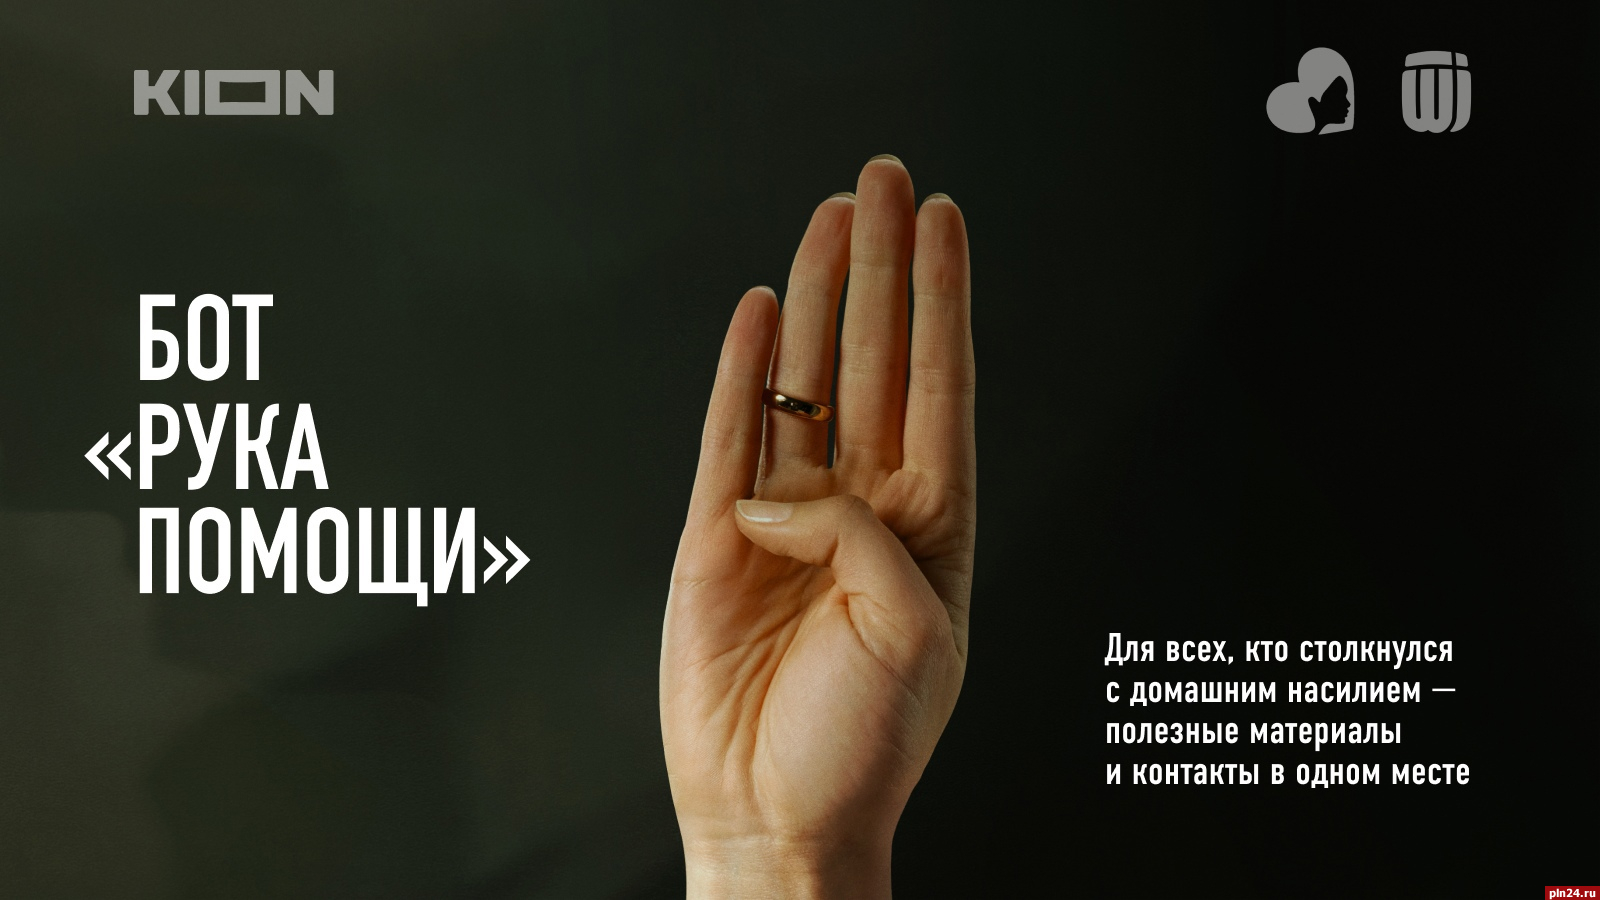 Чат-бот «Рука помощи» для борьбы с домашним насилием запустили в Псковской области